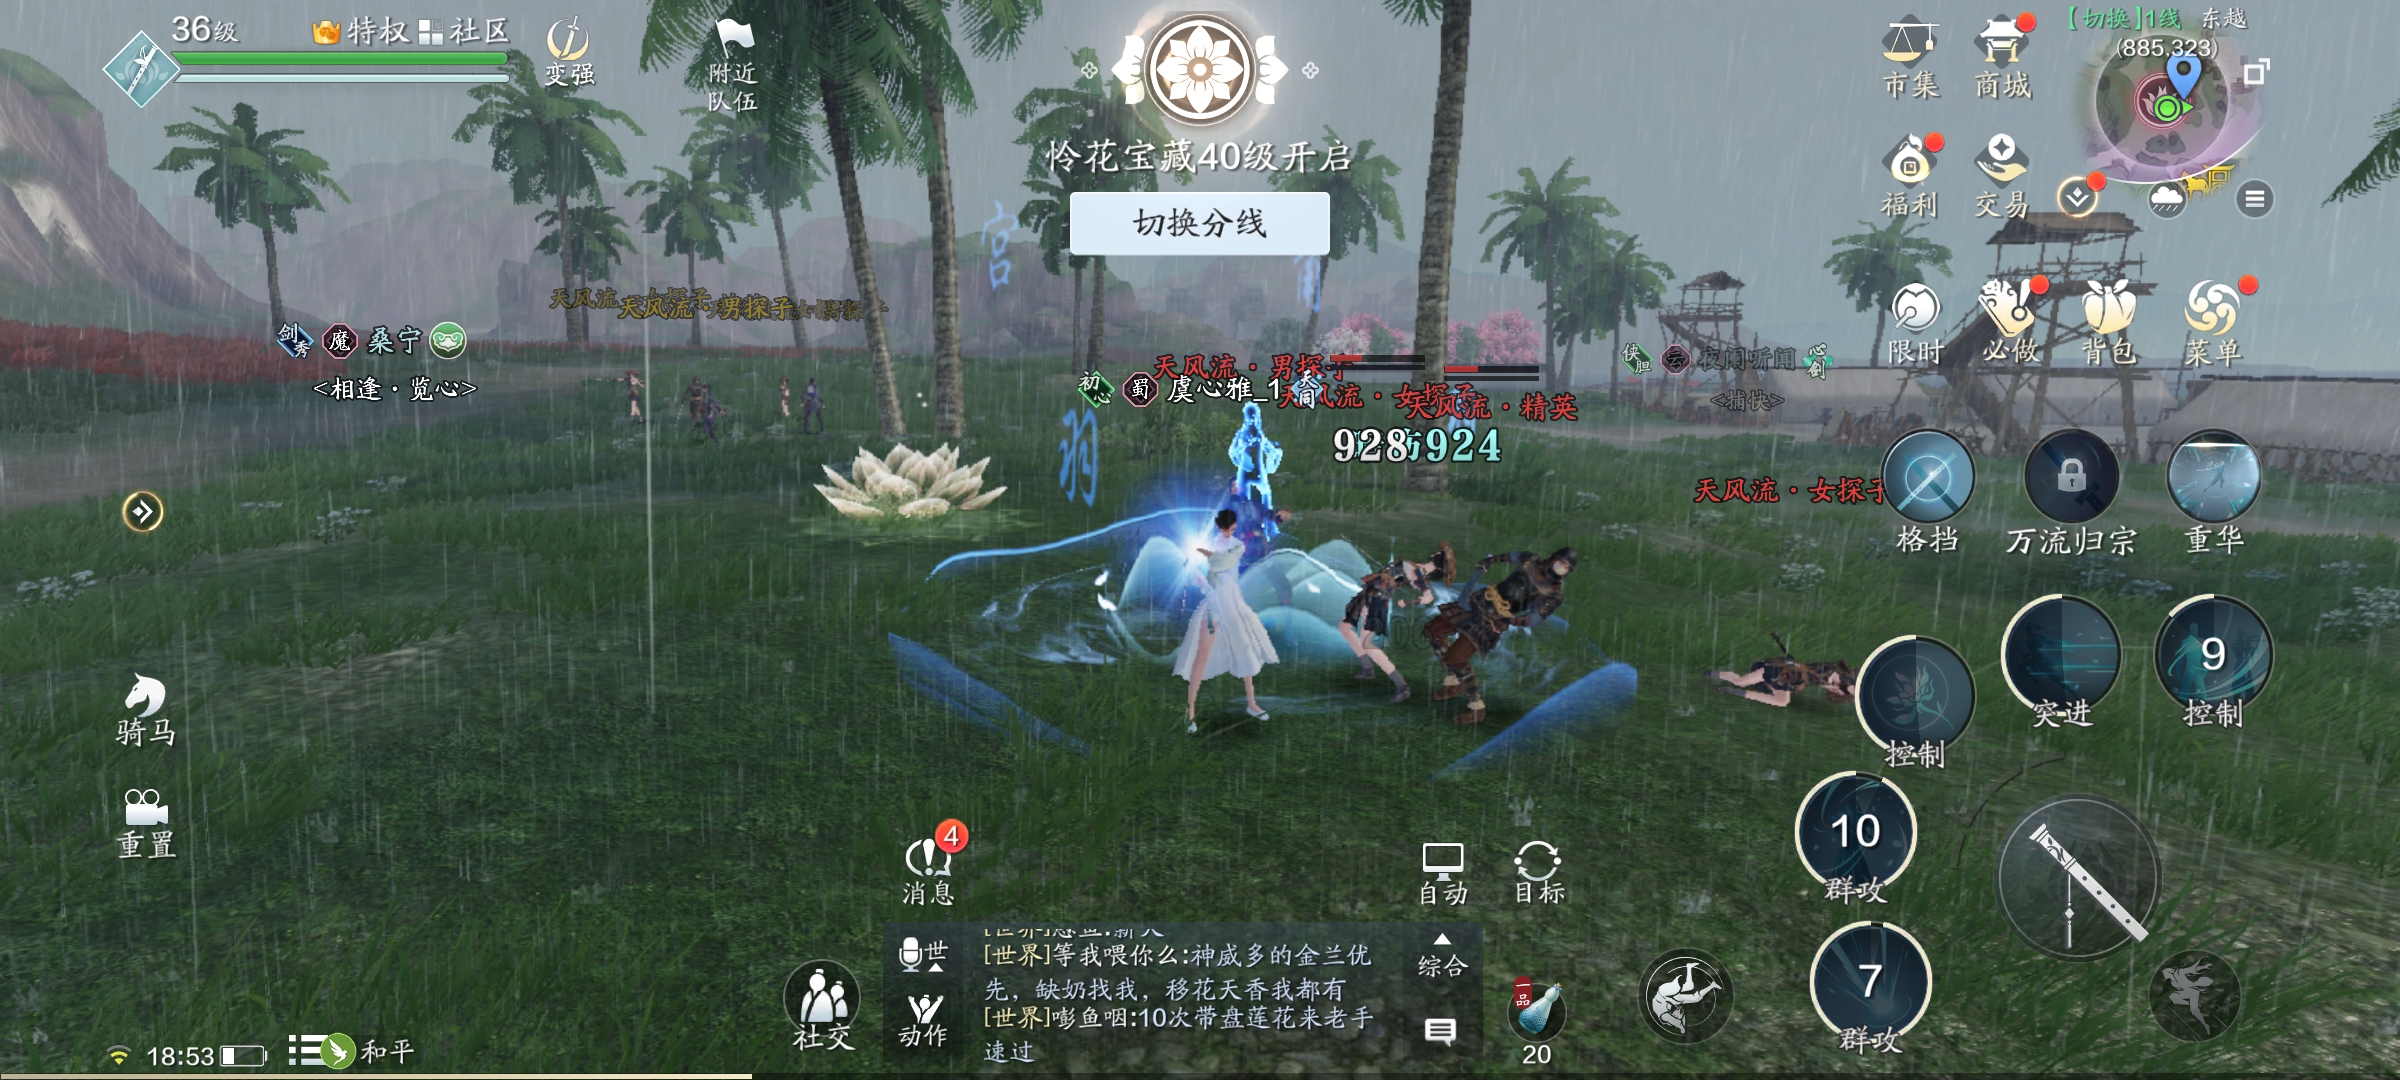 Game Thiên Nhai Minh Nguyệt Đao Mobile sở hữu cơ chế thanh định lực để người chơi có thể chống đỡ những đòn đánh của đối phương